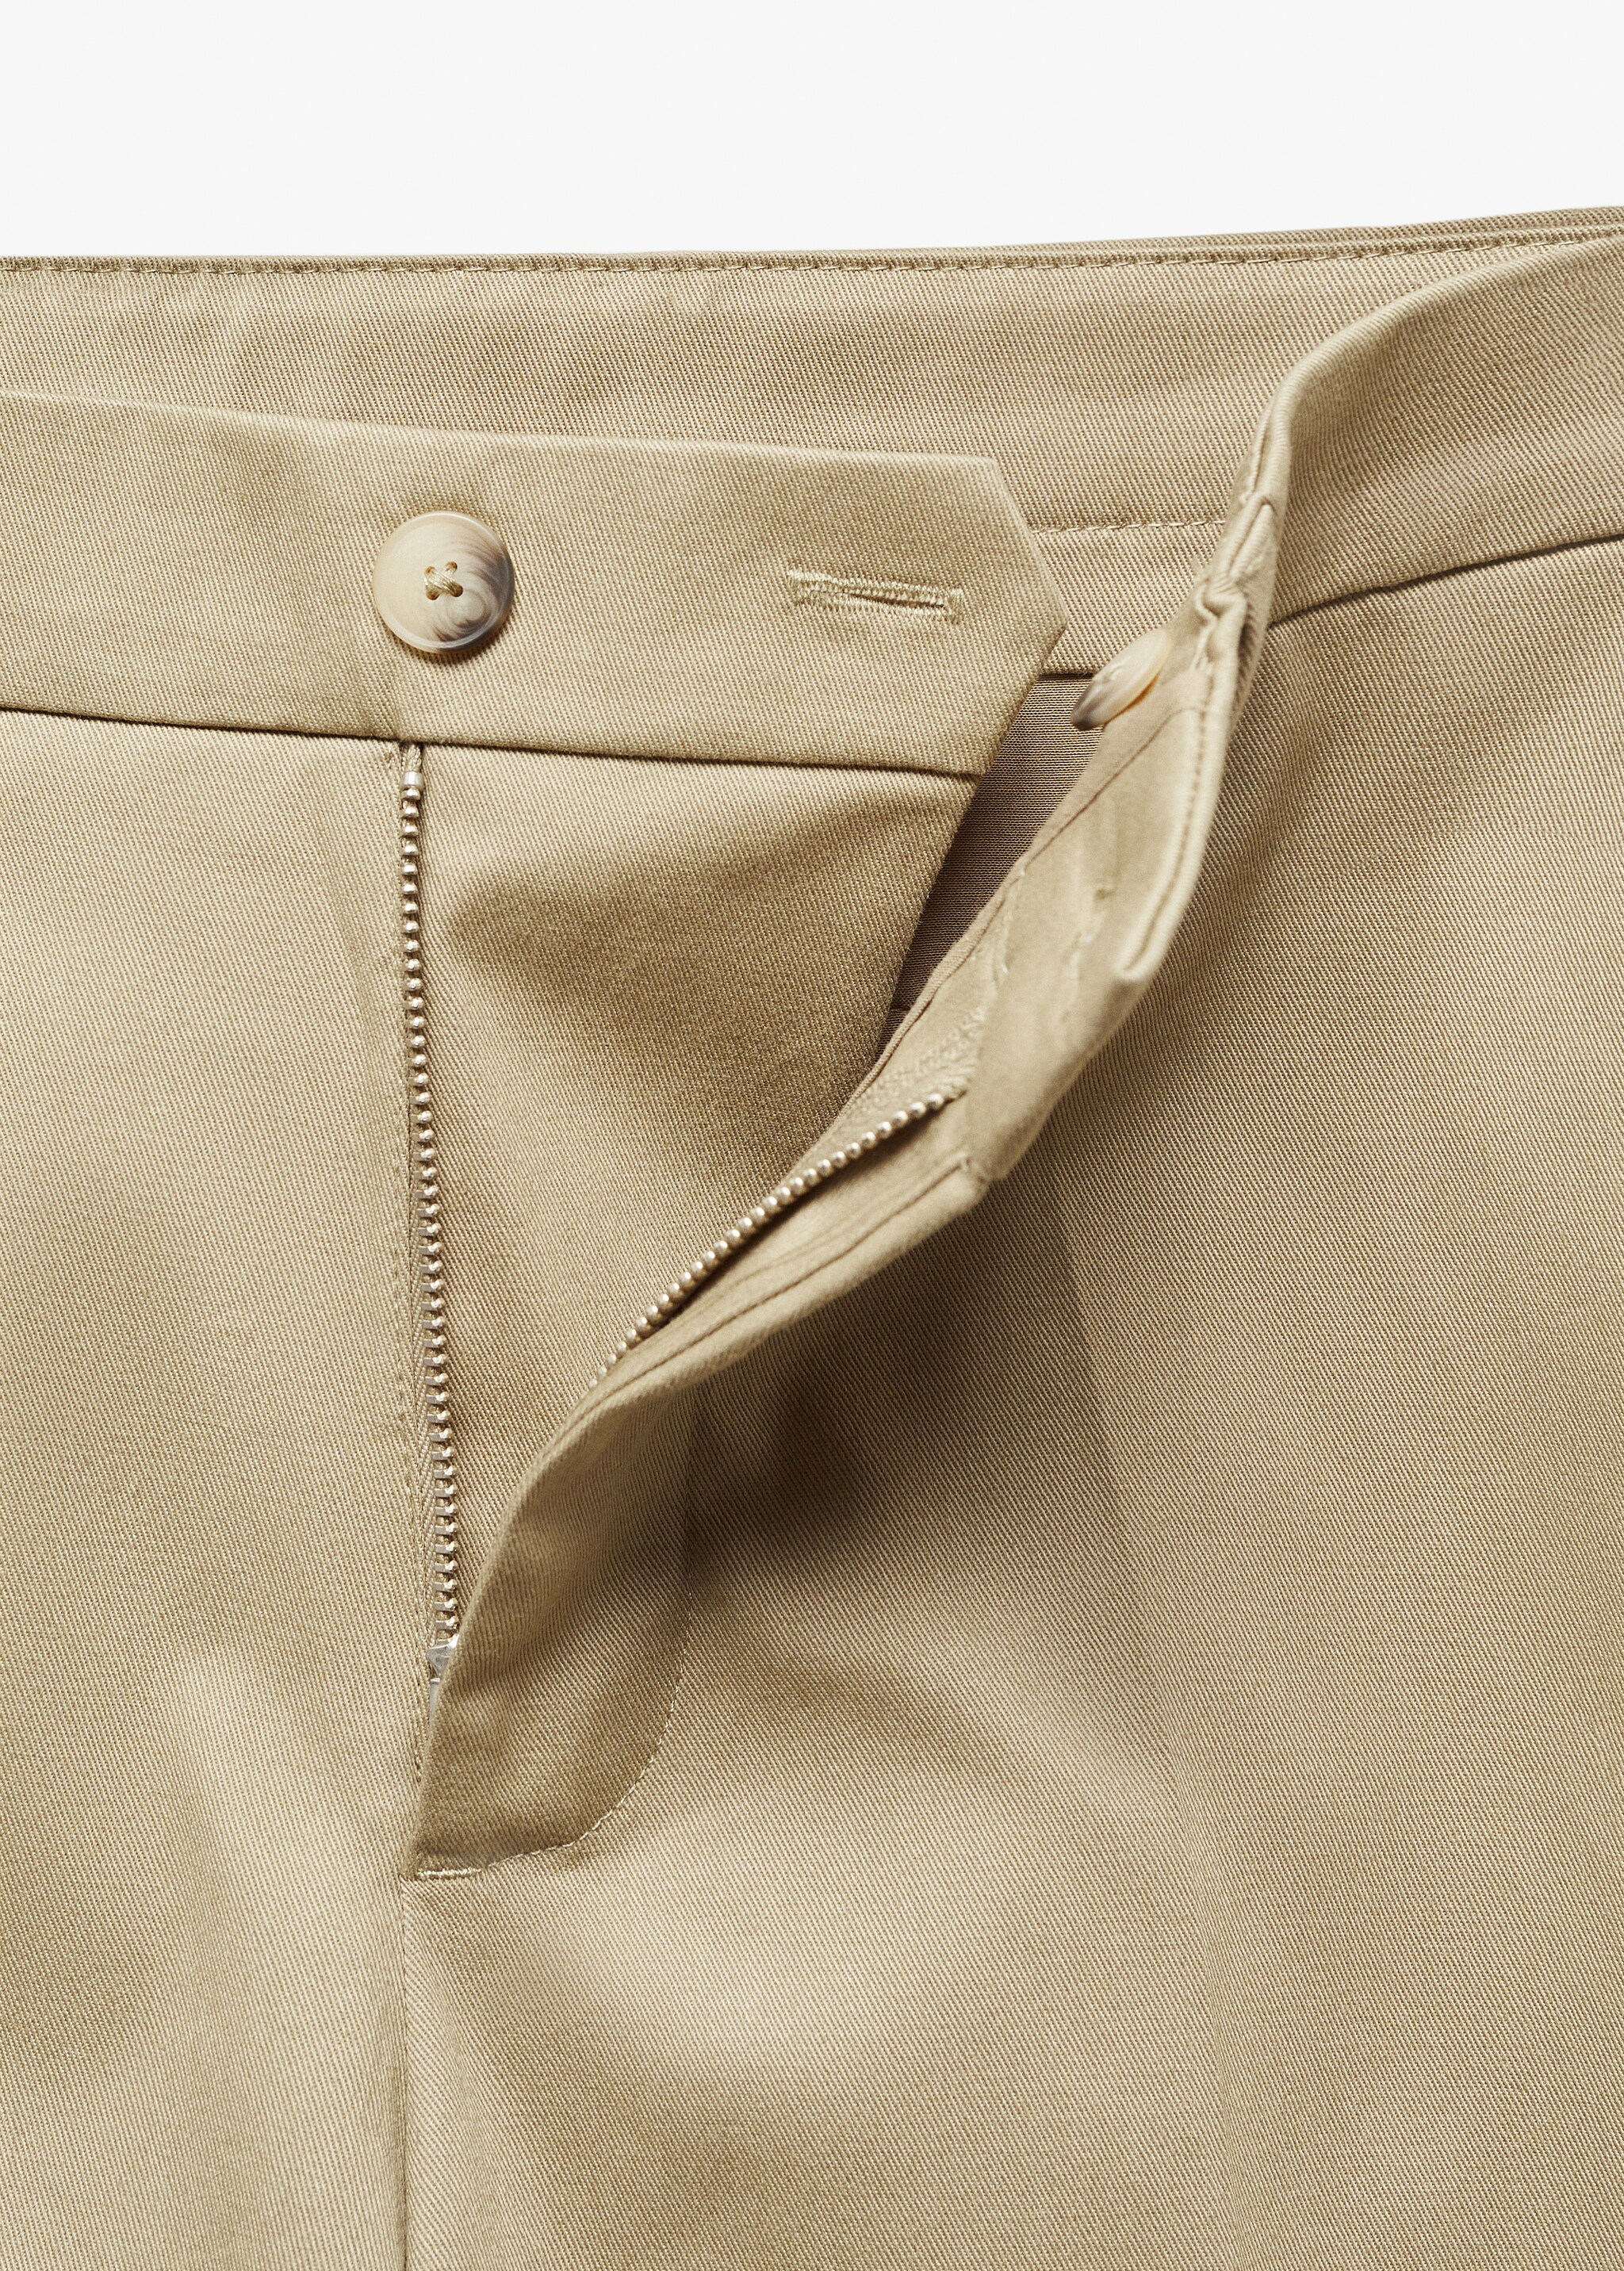 Spodnie chinos slim fit - Szczegóły artykułu 8